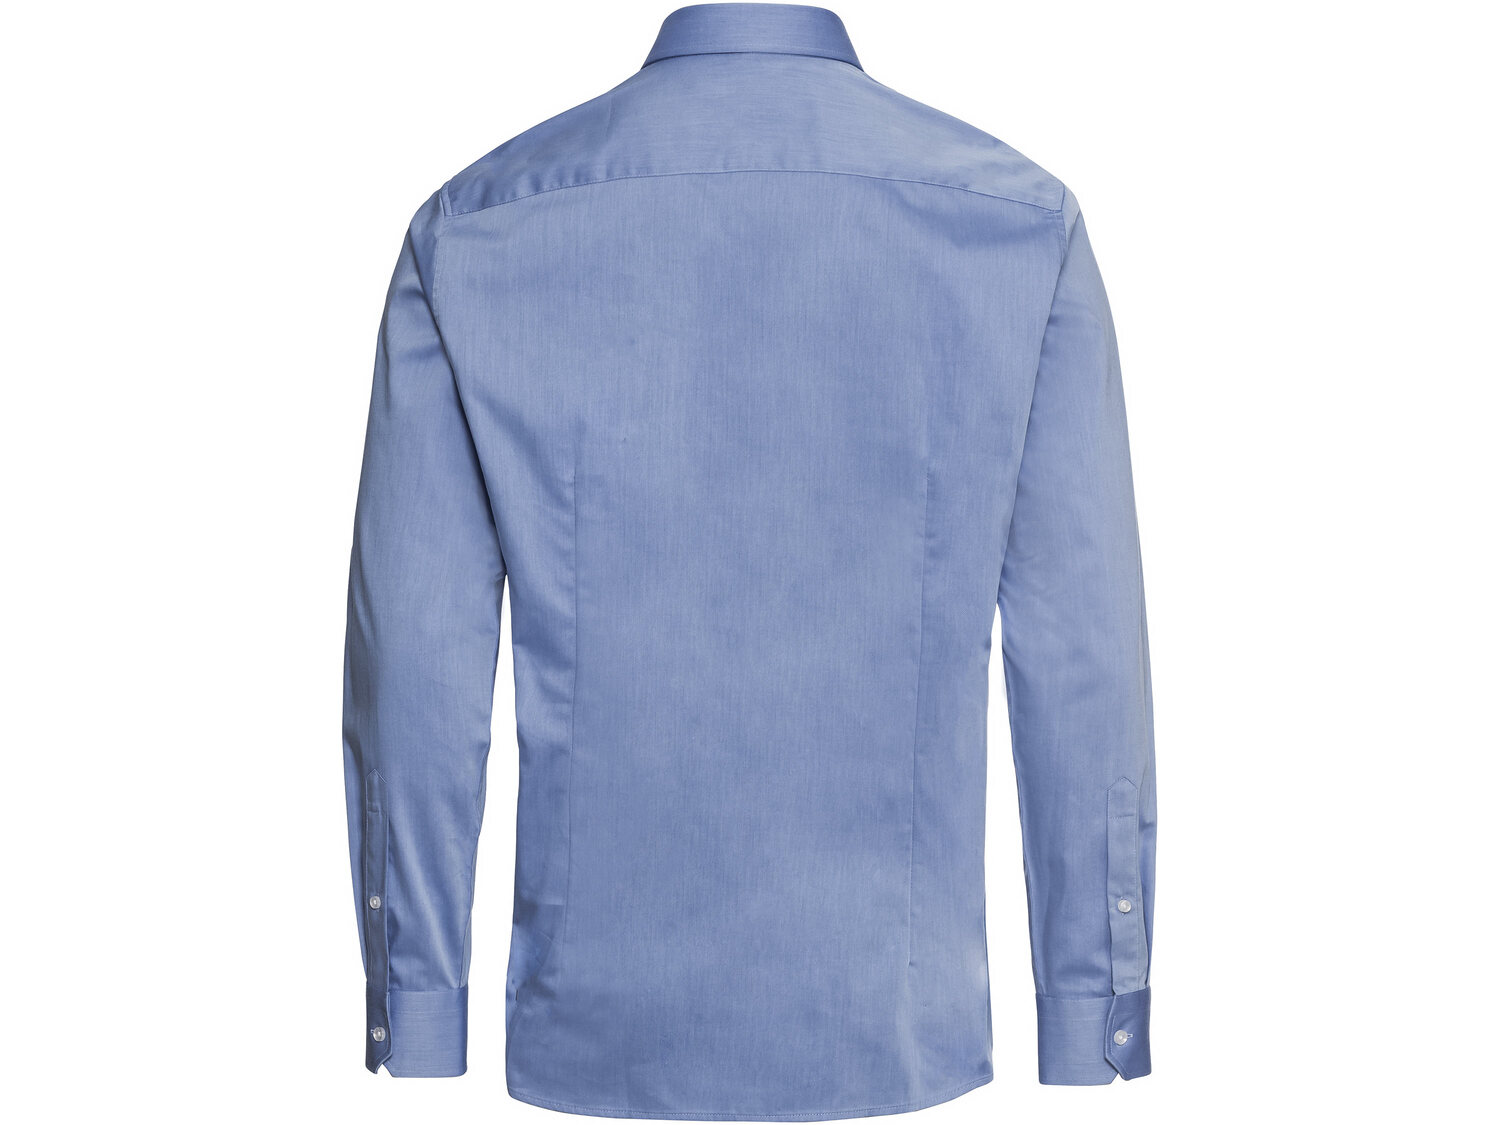 Koszula , cena 49,99 PLN 
- 100% bawełny
- rozmiary: 39-43
- slim fit - krój ...